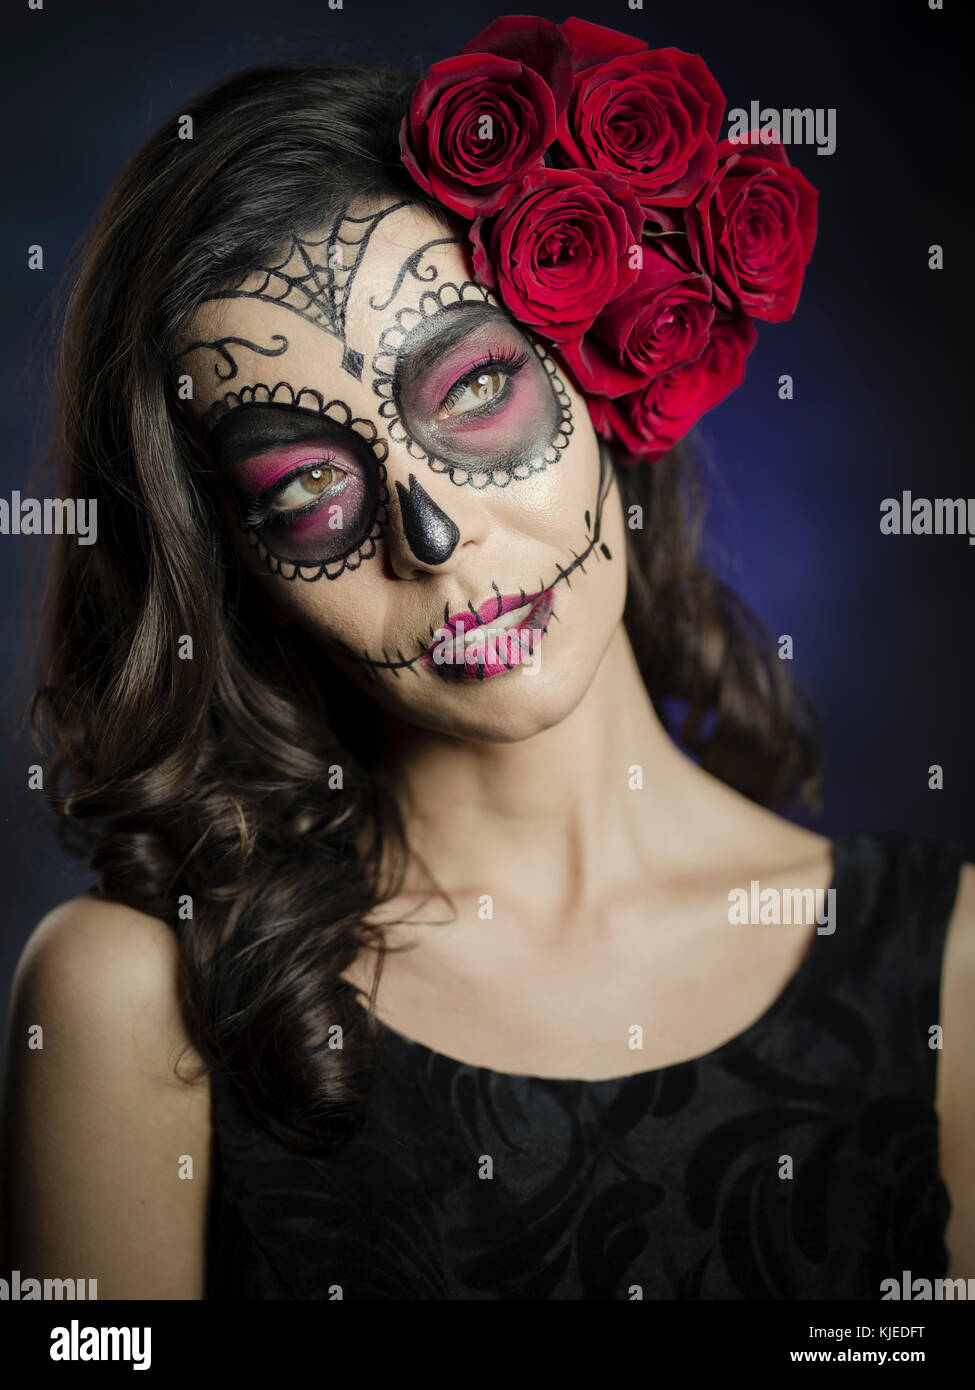 Belle Mexican American Woman celebrating Día de los Muertos ( día de muertos ) est la maison de vacances mexicaines aussi connu comme le Jour des Morts crâne avec un miroir et de roses dans le style de Catrina. Banque D'Images